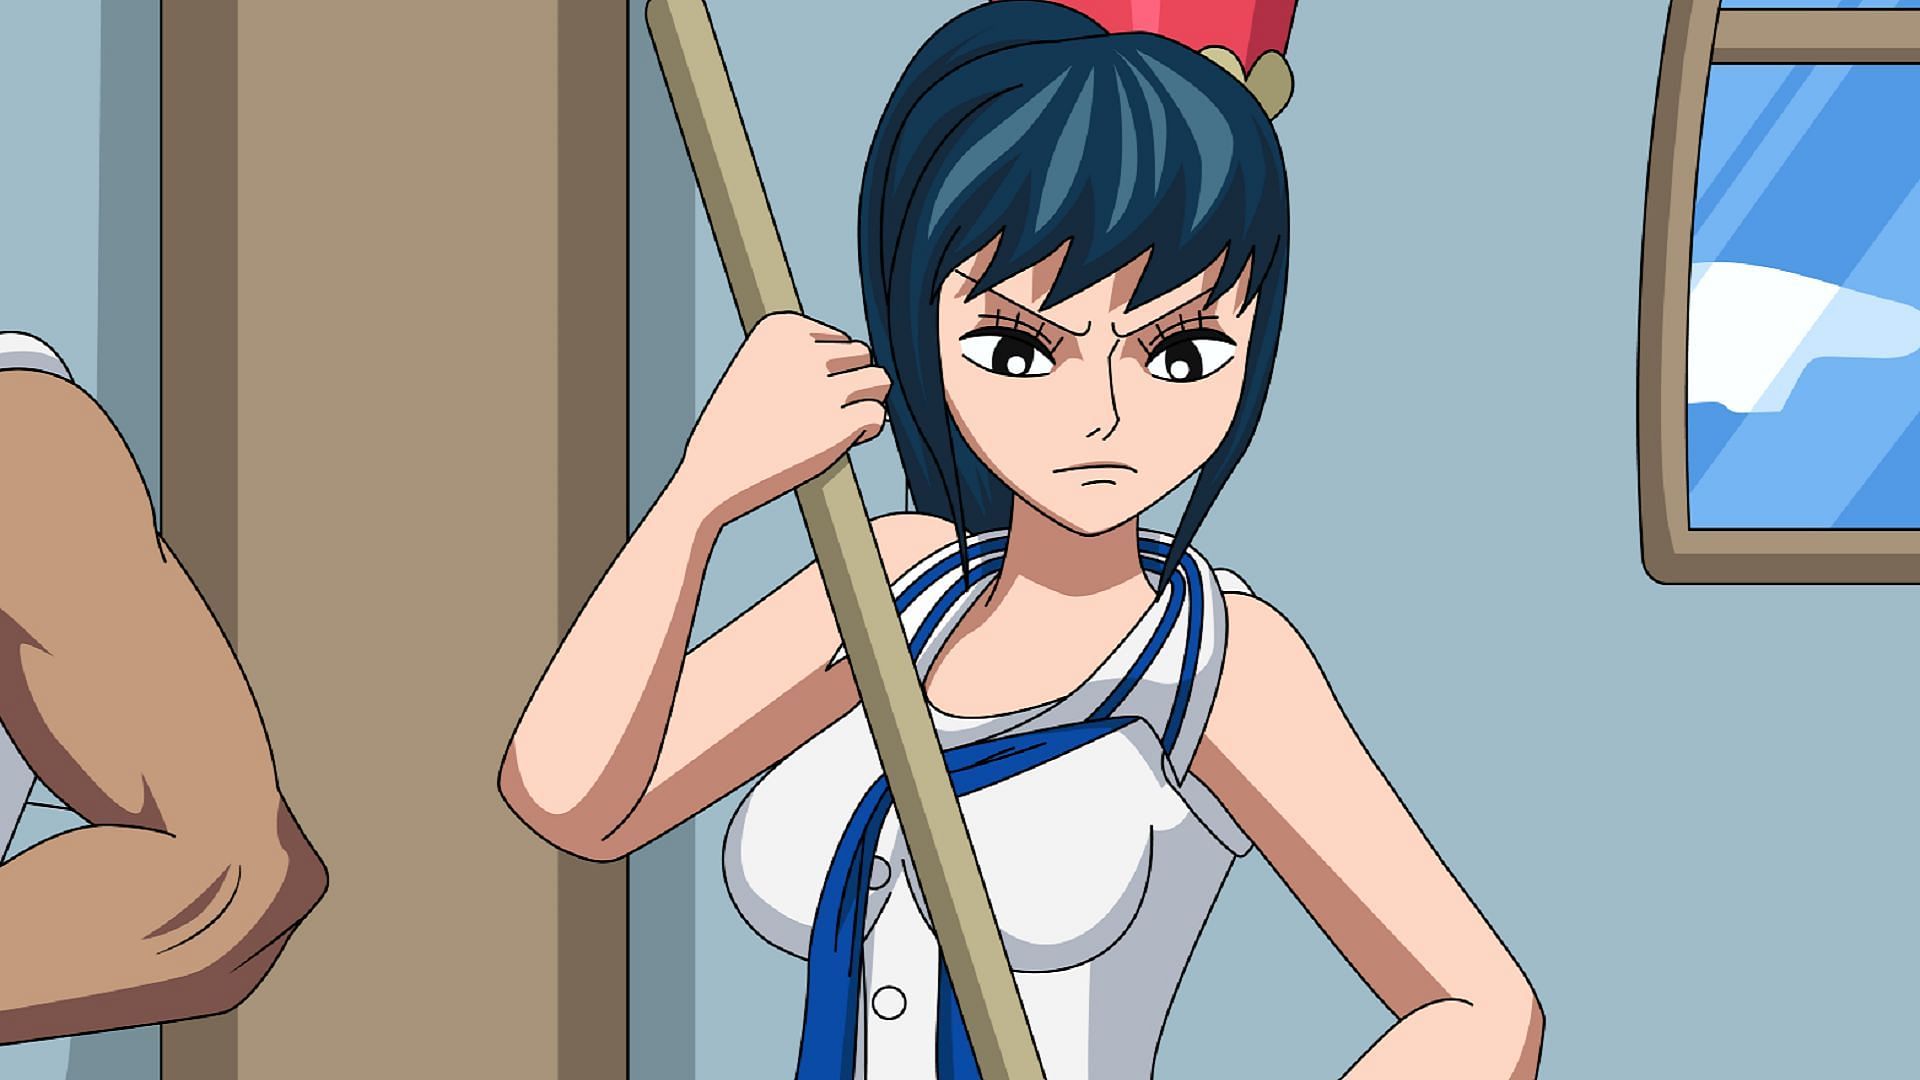 Tsuru in her prime days (Image via Eiichiro Oda/Shueisha, One Piece)